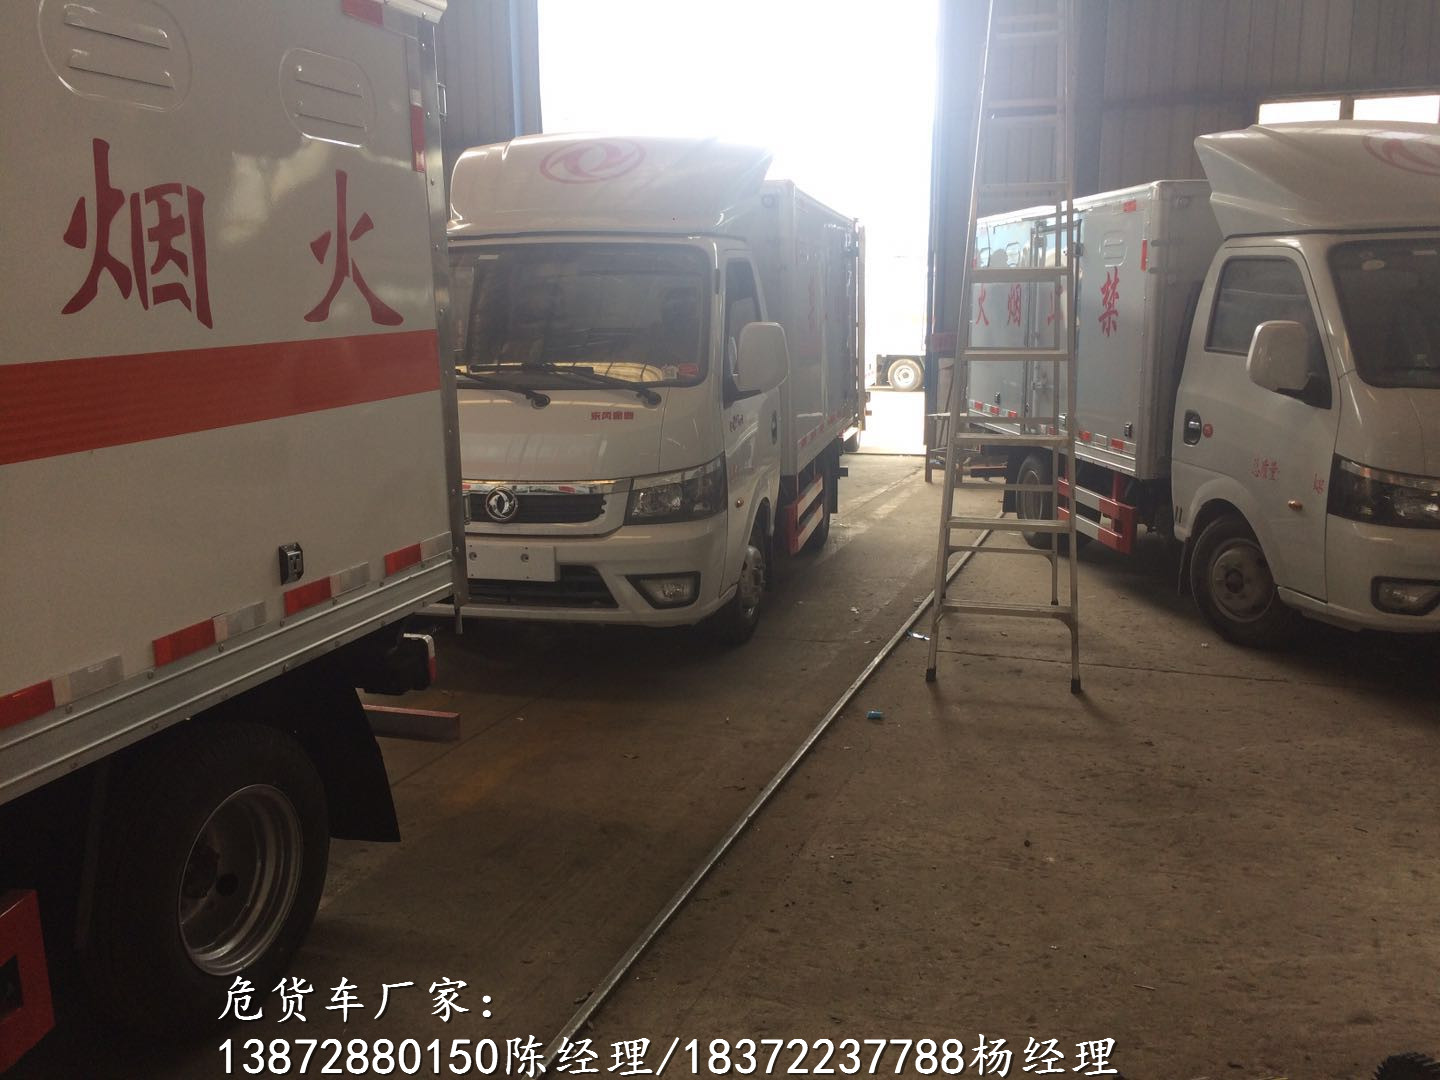 国六福田可拆卸栏板式气瓶车4S店价格 危险品车厂家